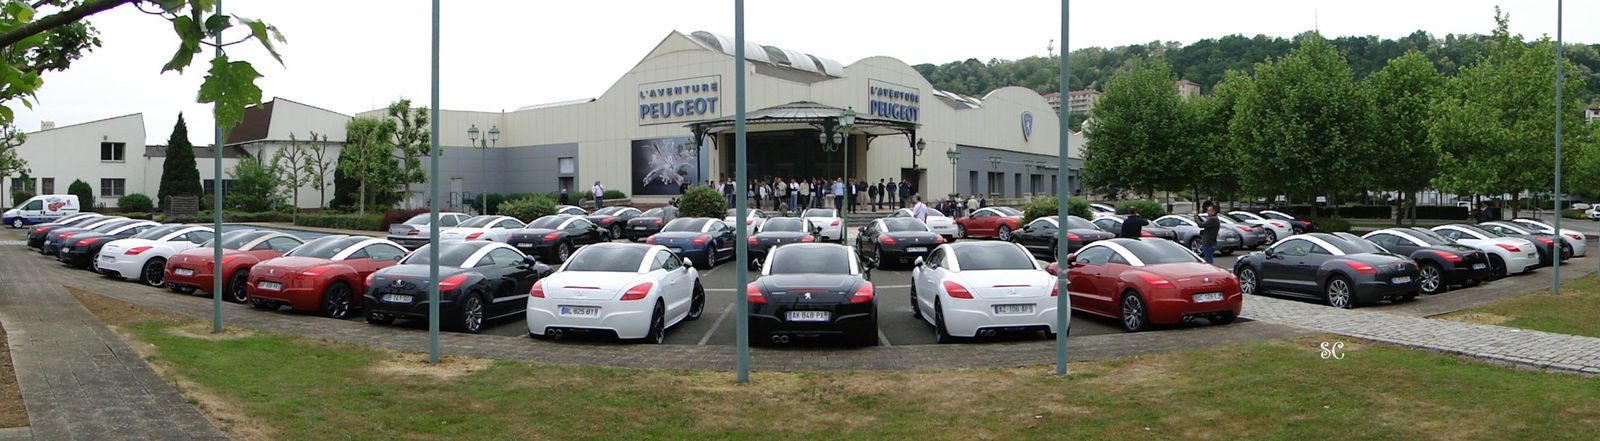 "L'Aventure Peugeot" retrace ici l'histoire de la marque Sochalienne. Une visite à ne pas manquer si vous passer par la région ! et à faire régulièrement si vous habitez cette belle région ! Ouvert tous les jours de l'année sauf le 1/1 et le 25/12.